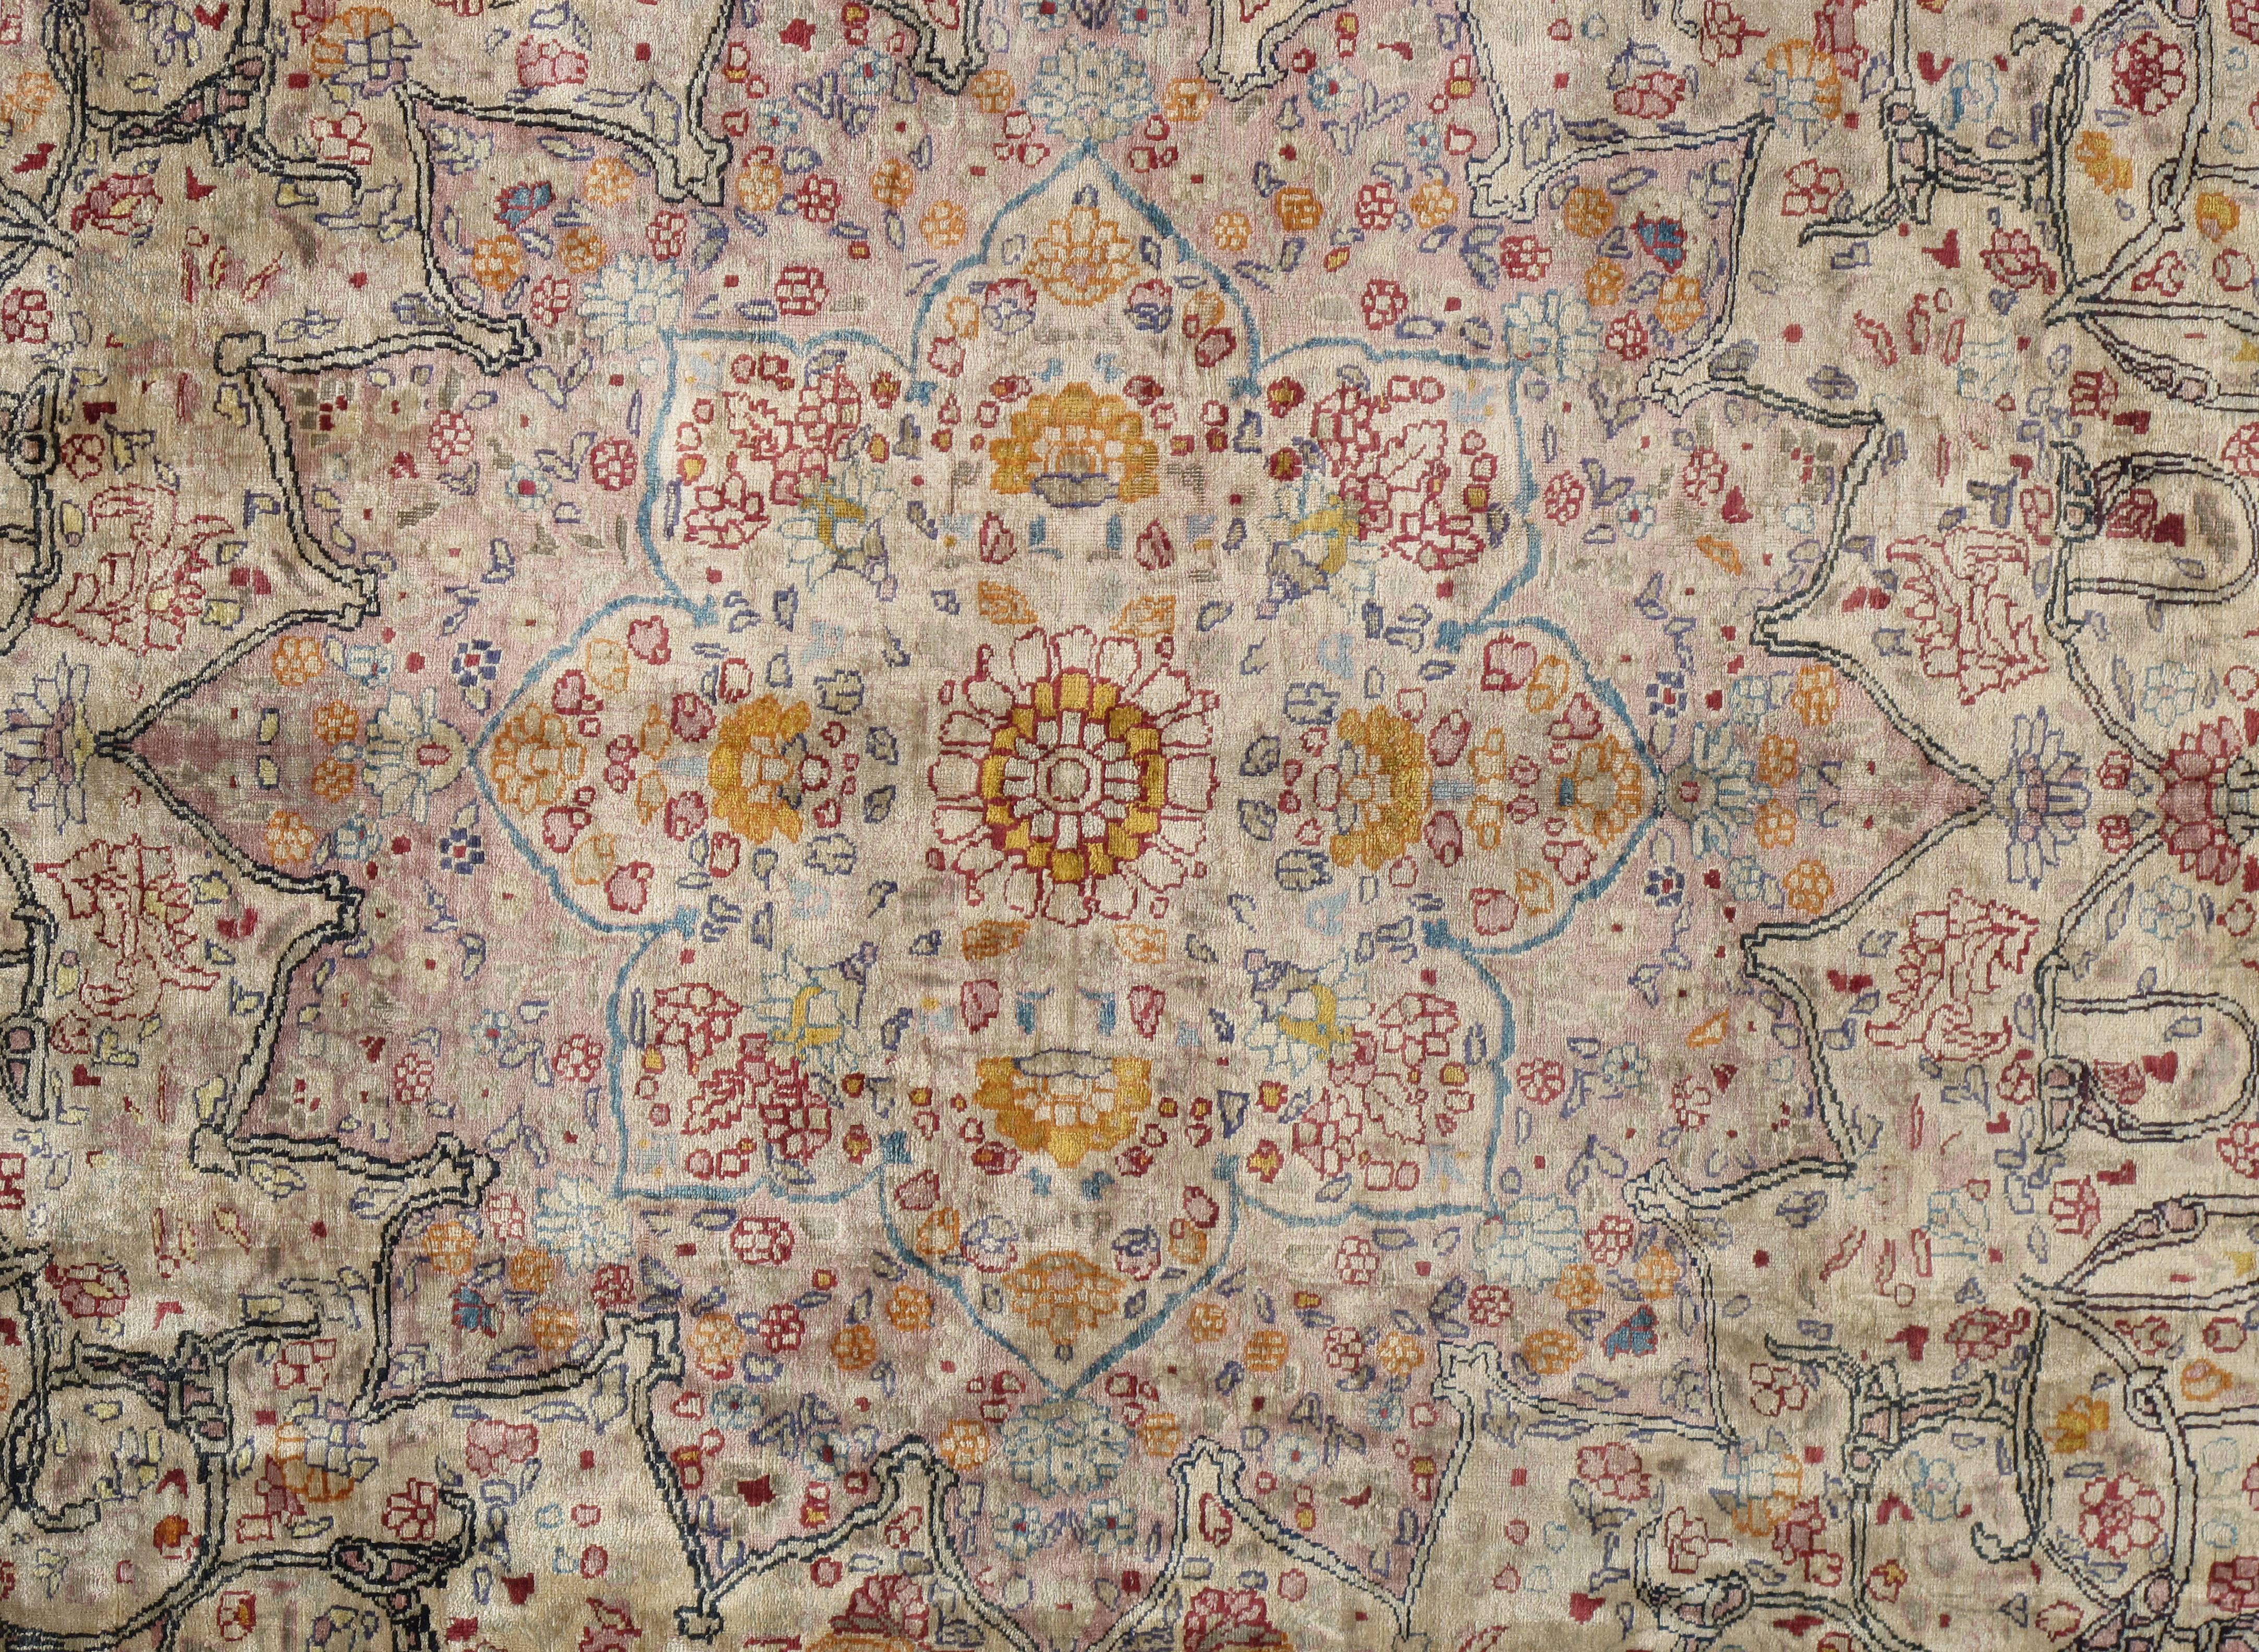 Fein gewebter Tabriz-Teppich aus Seide. Täbris, die Hauptstadt der nordwestlichen iranischen Provinz Aserbaidschan, genießt seit Jahrhunderten ein hohes Ansehen als Zentrum der persischen Kultur. Unter der wohlwollenden Schirmherrschaft von Schah